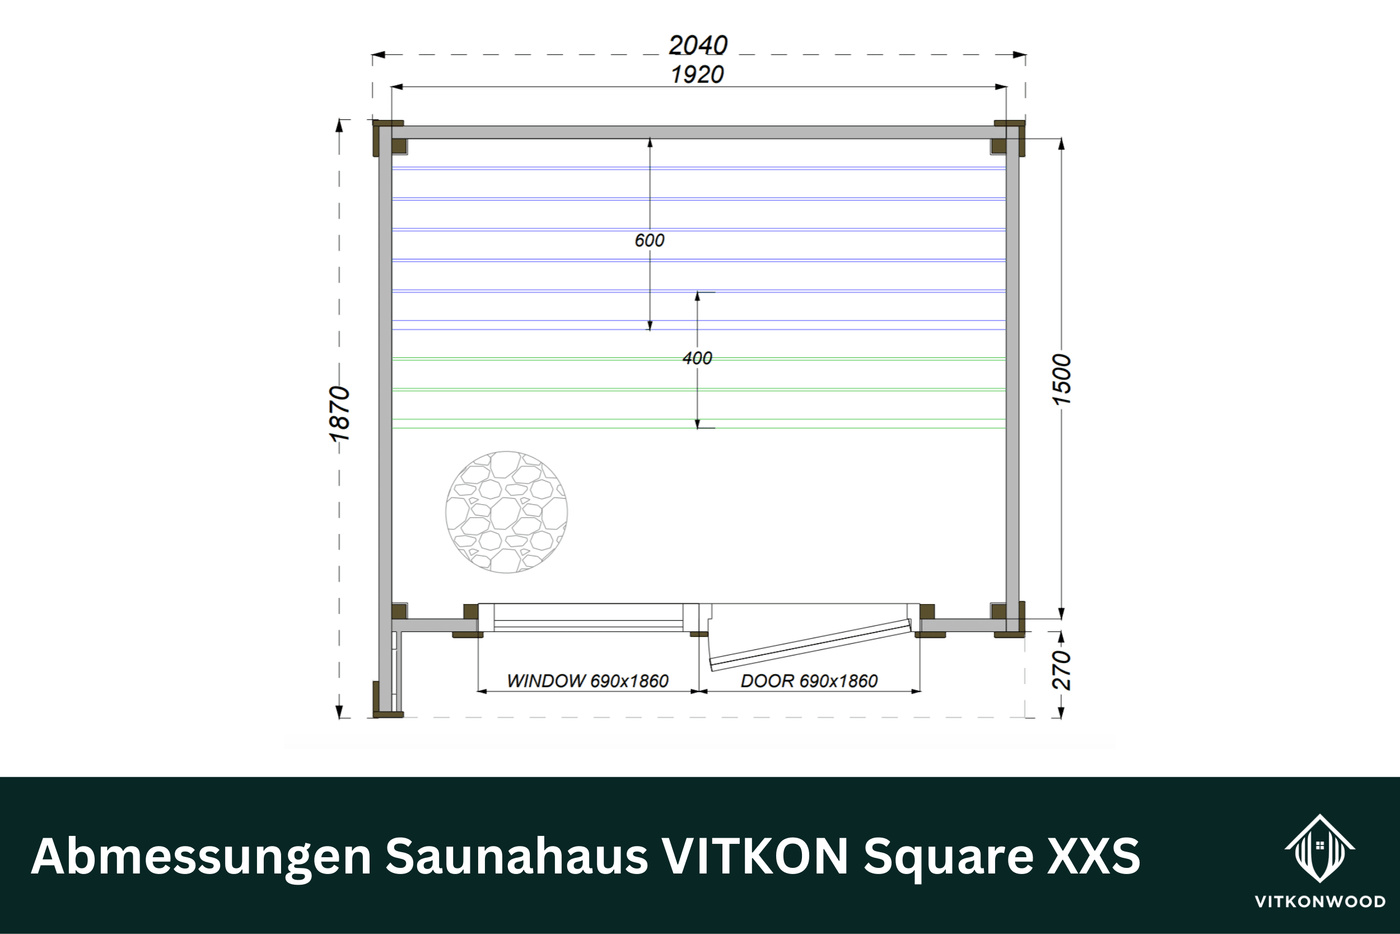 Premium Saunahaus VITKON Square XXS - Thermoholz